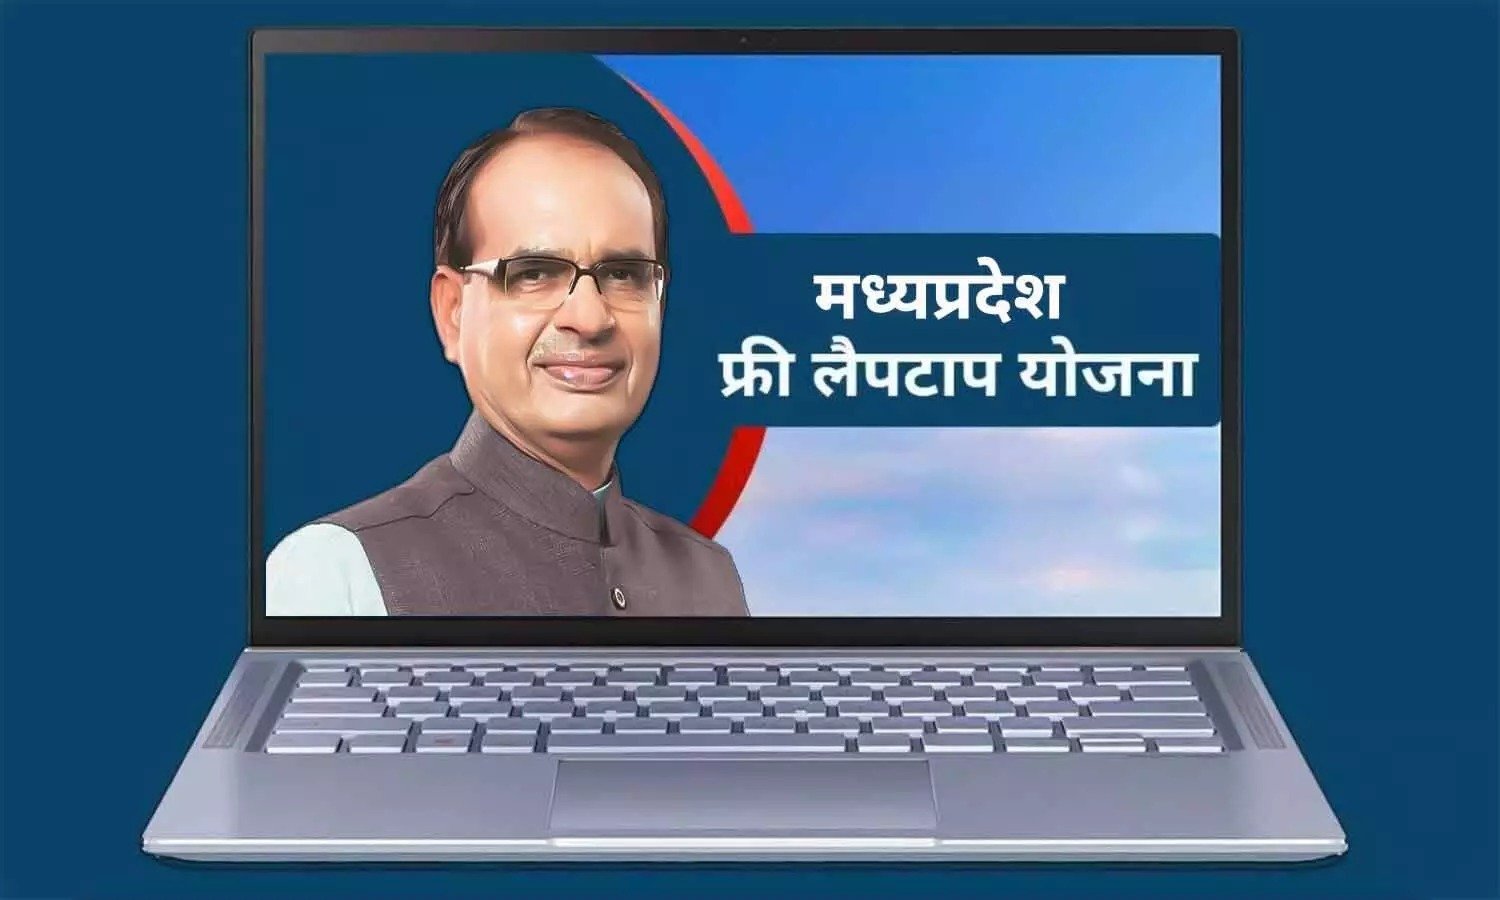 Free Laptop Scheme मध्य प्रदेश सरकार विद्यार्थियों को दे रही मुफ्त लैपटॉप छात्रों के खाते में आएंगे 25,000 रुपये यहाँ से करे आवेदन